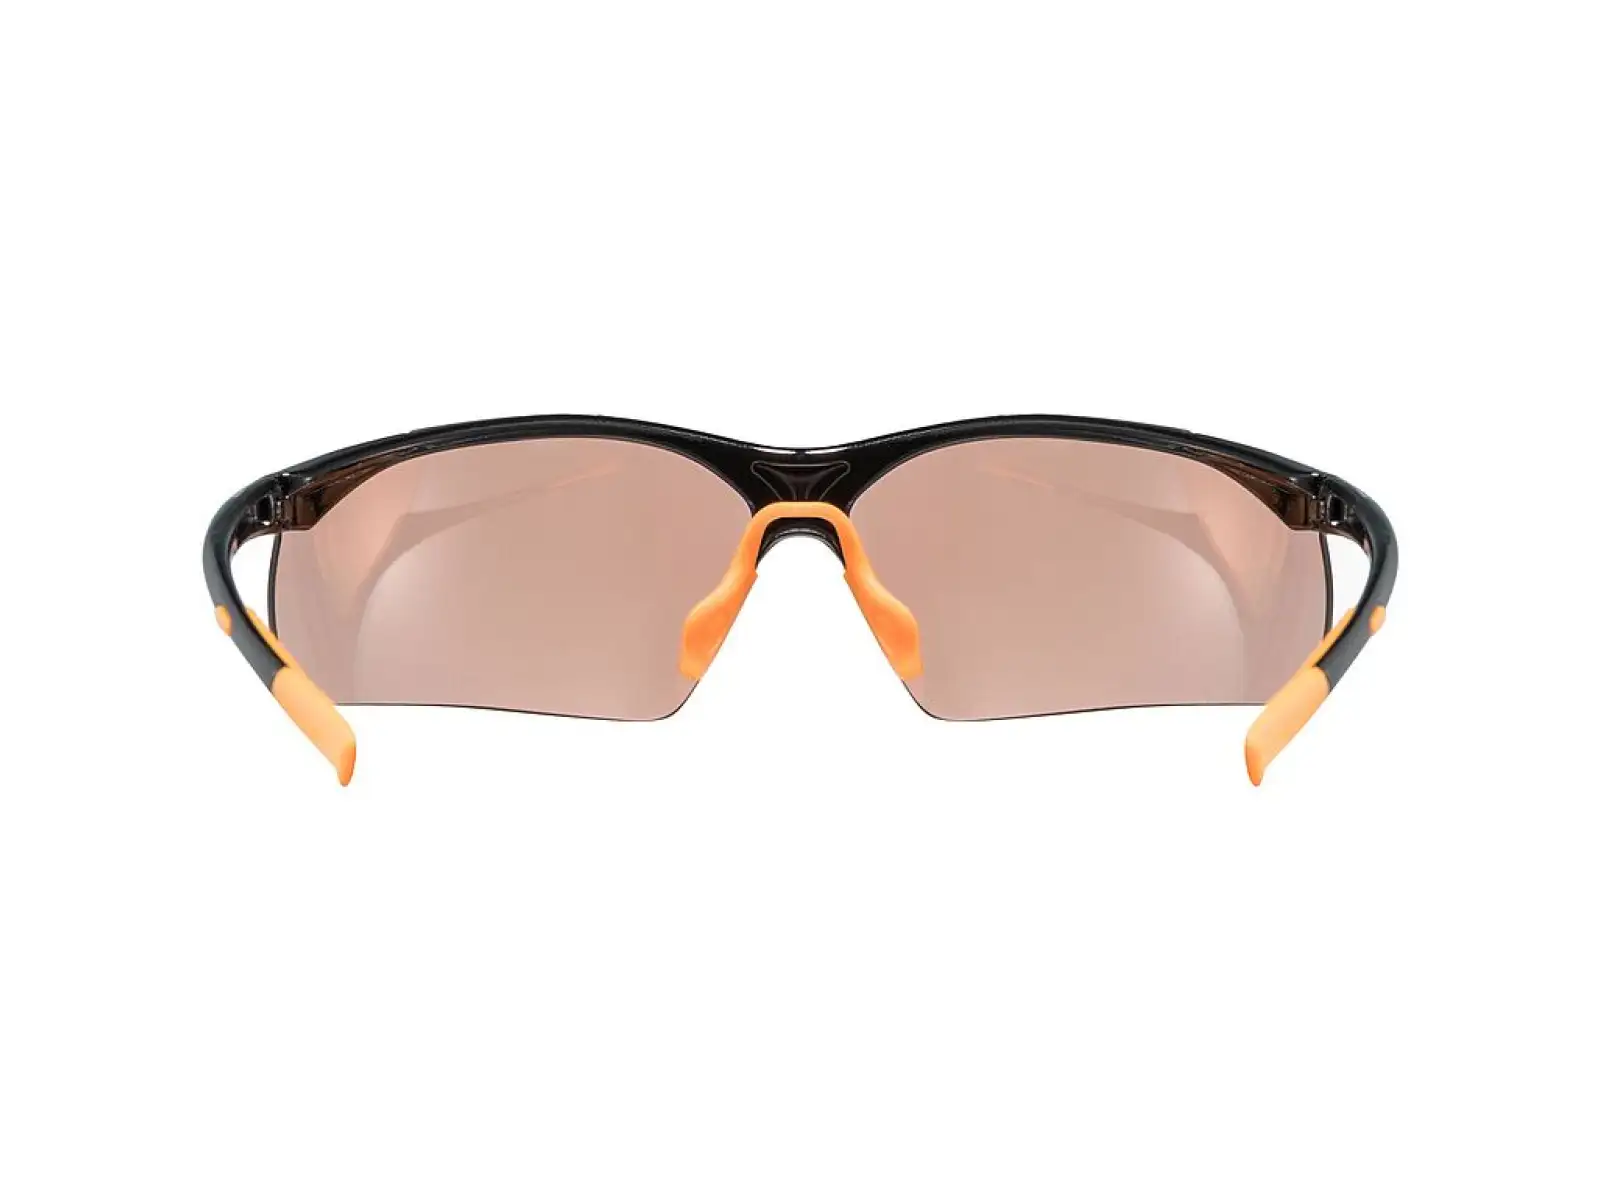 Slnečné okuliare Uvex Sportstyle 223 čierne/oranžové